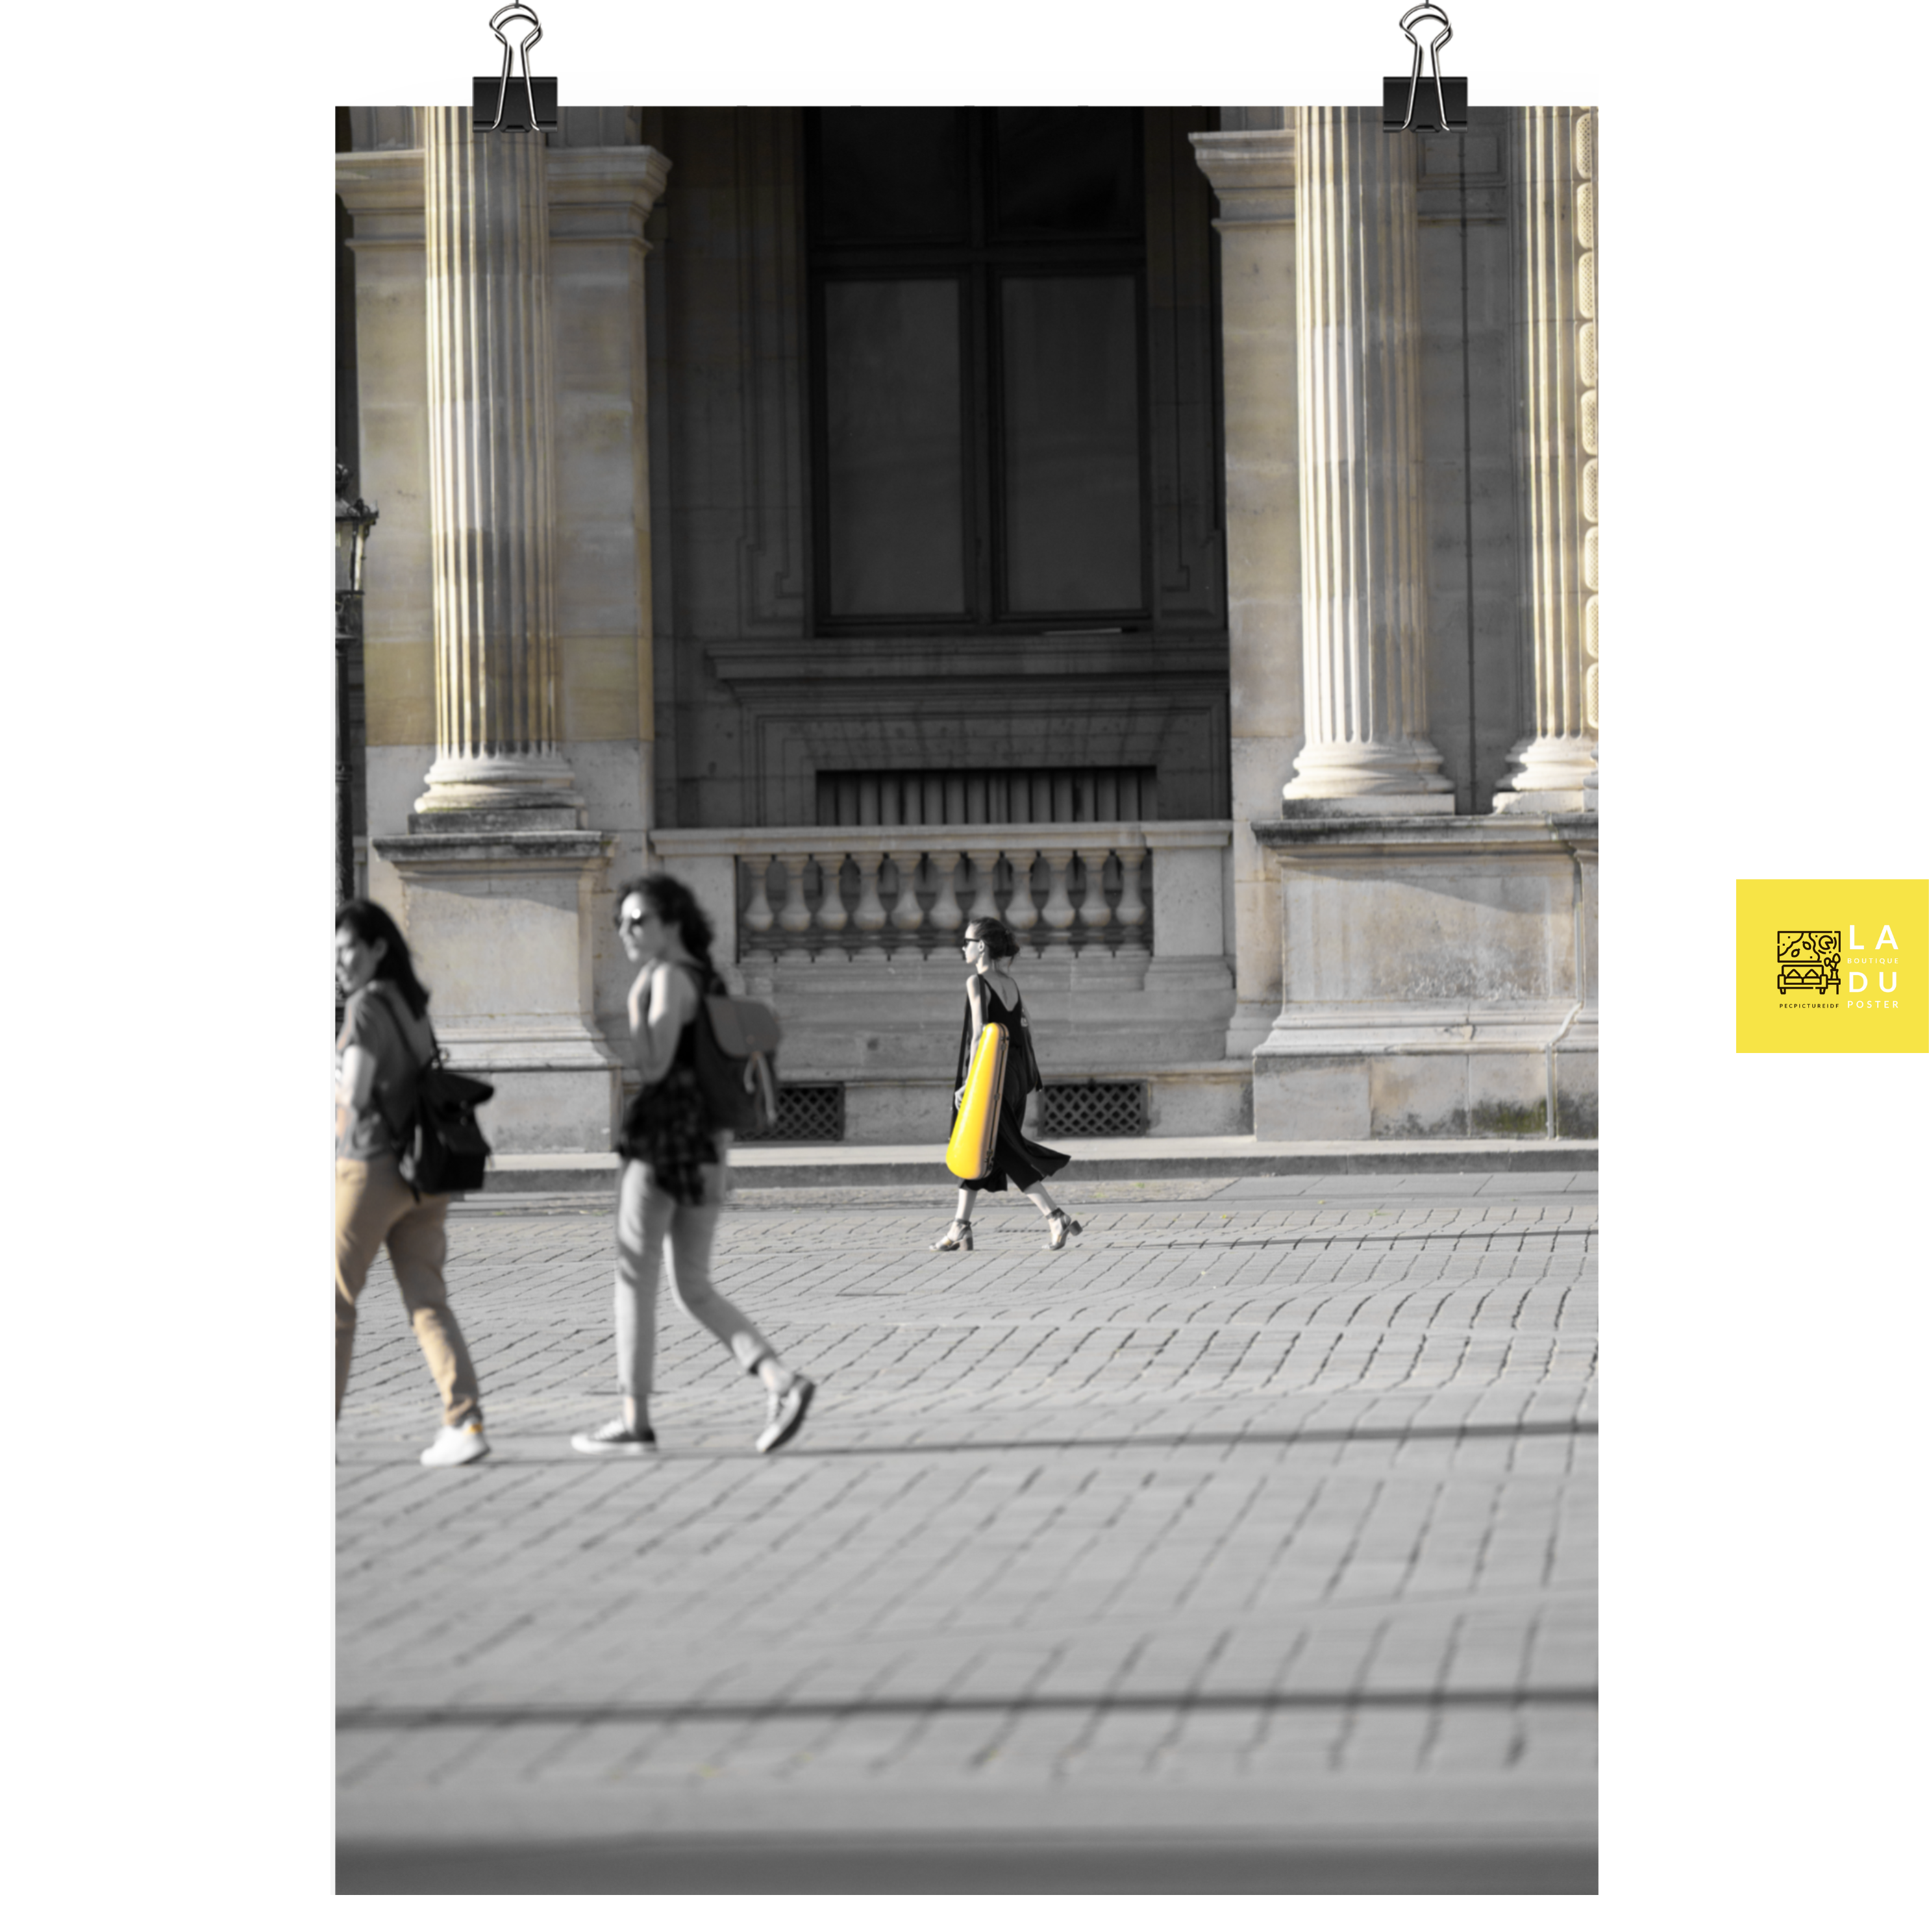 La violoniste du Louvre - Poster - La boutique du poster Français